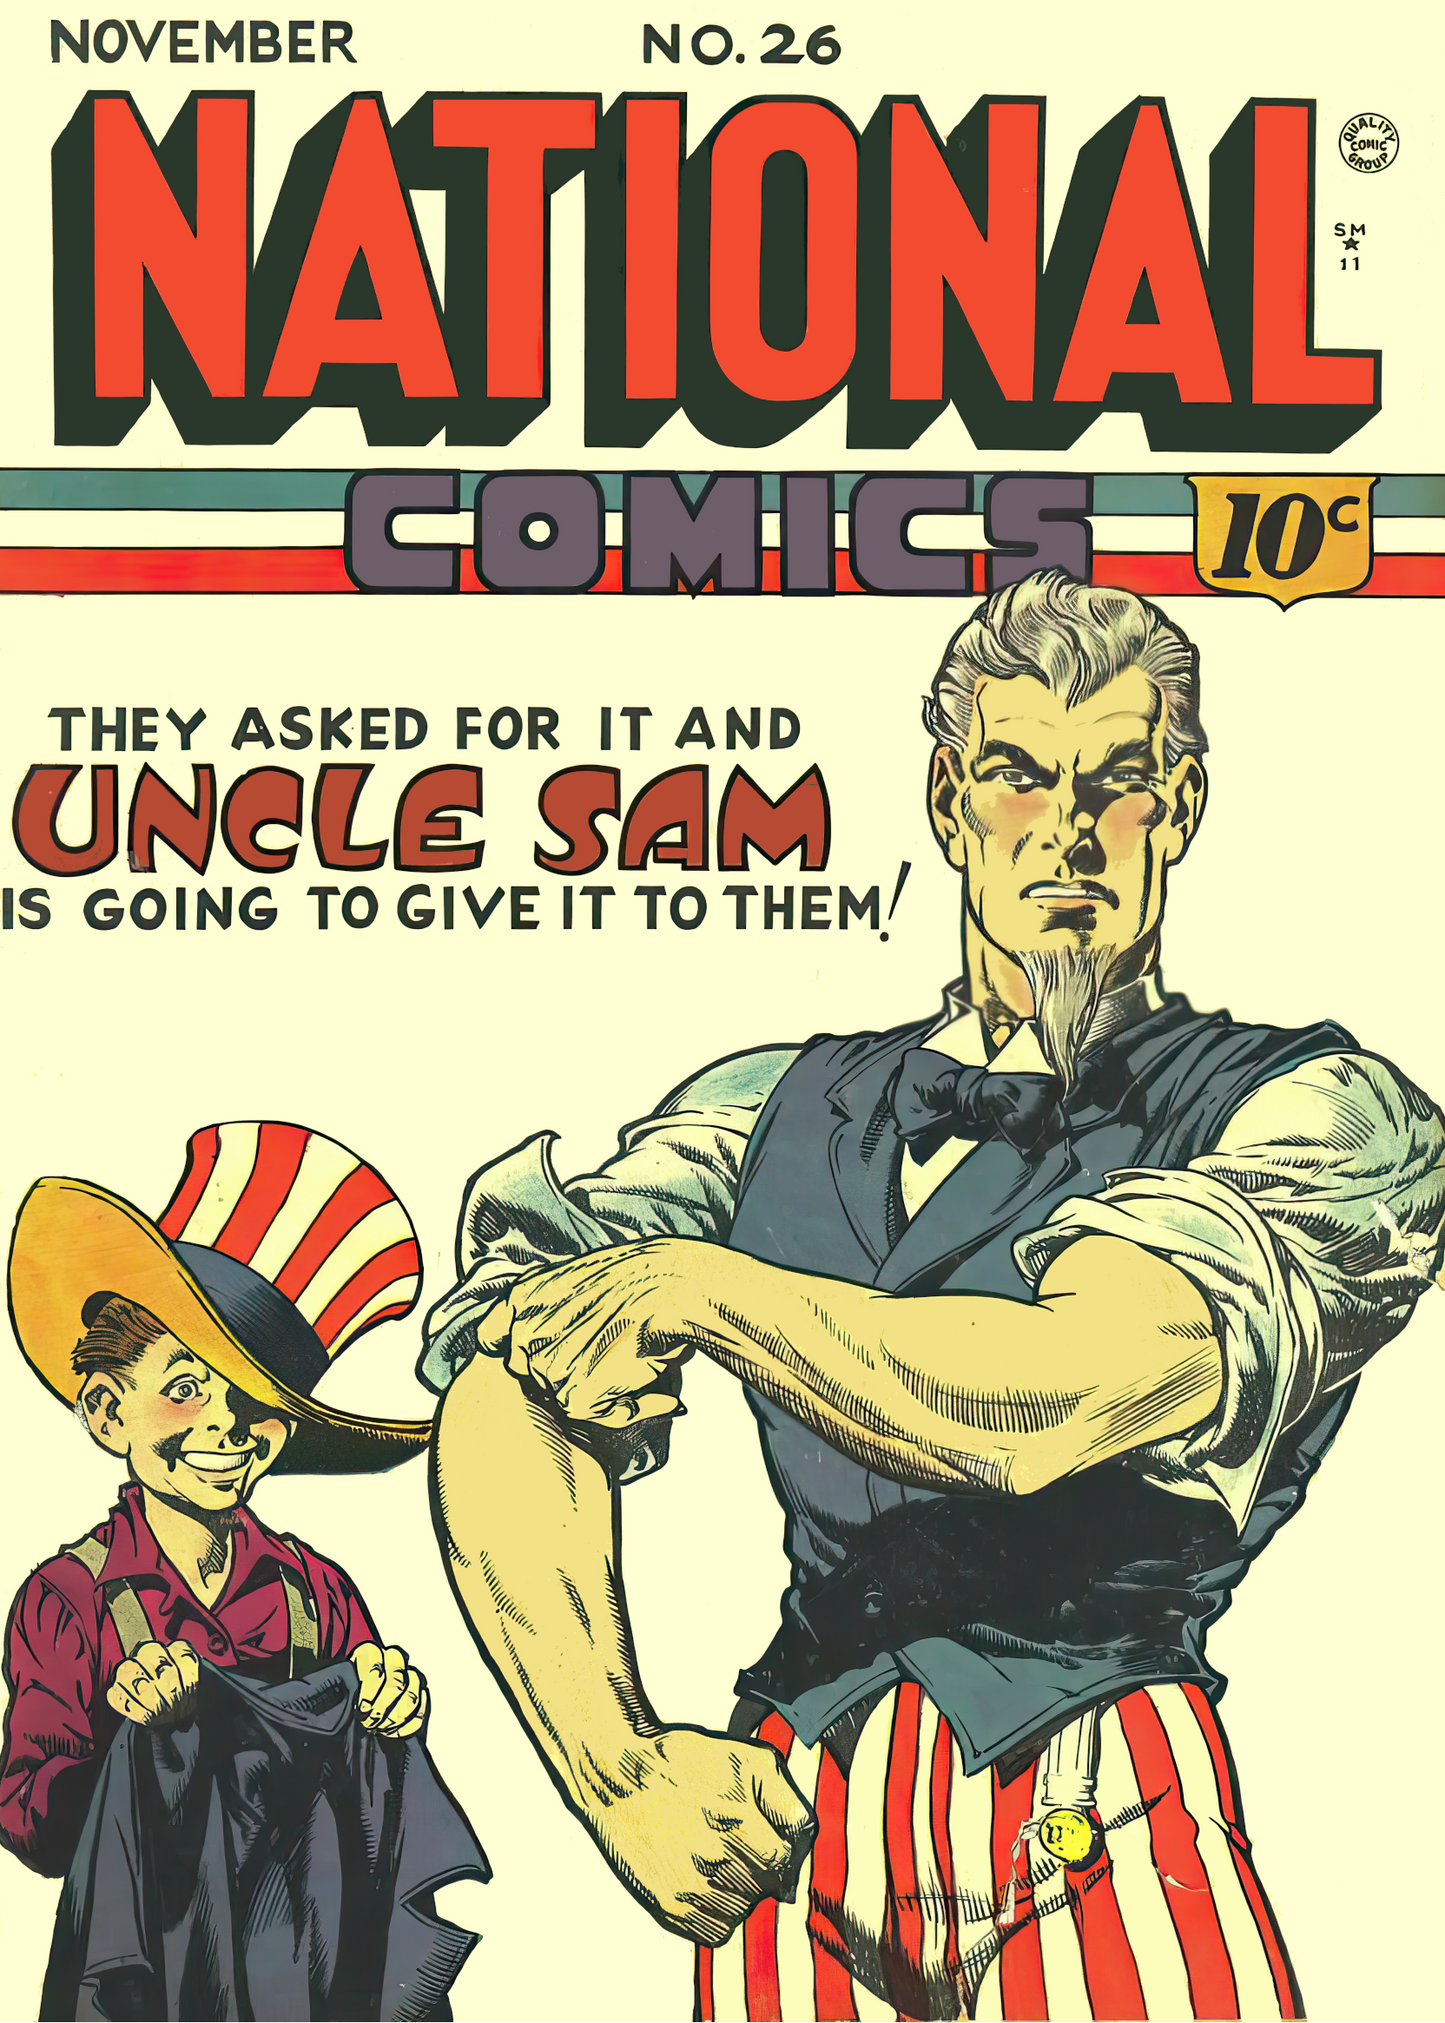 #991 National Comics #26